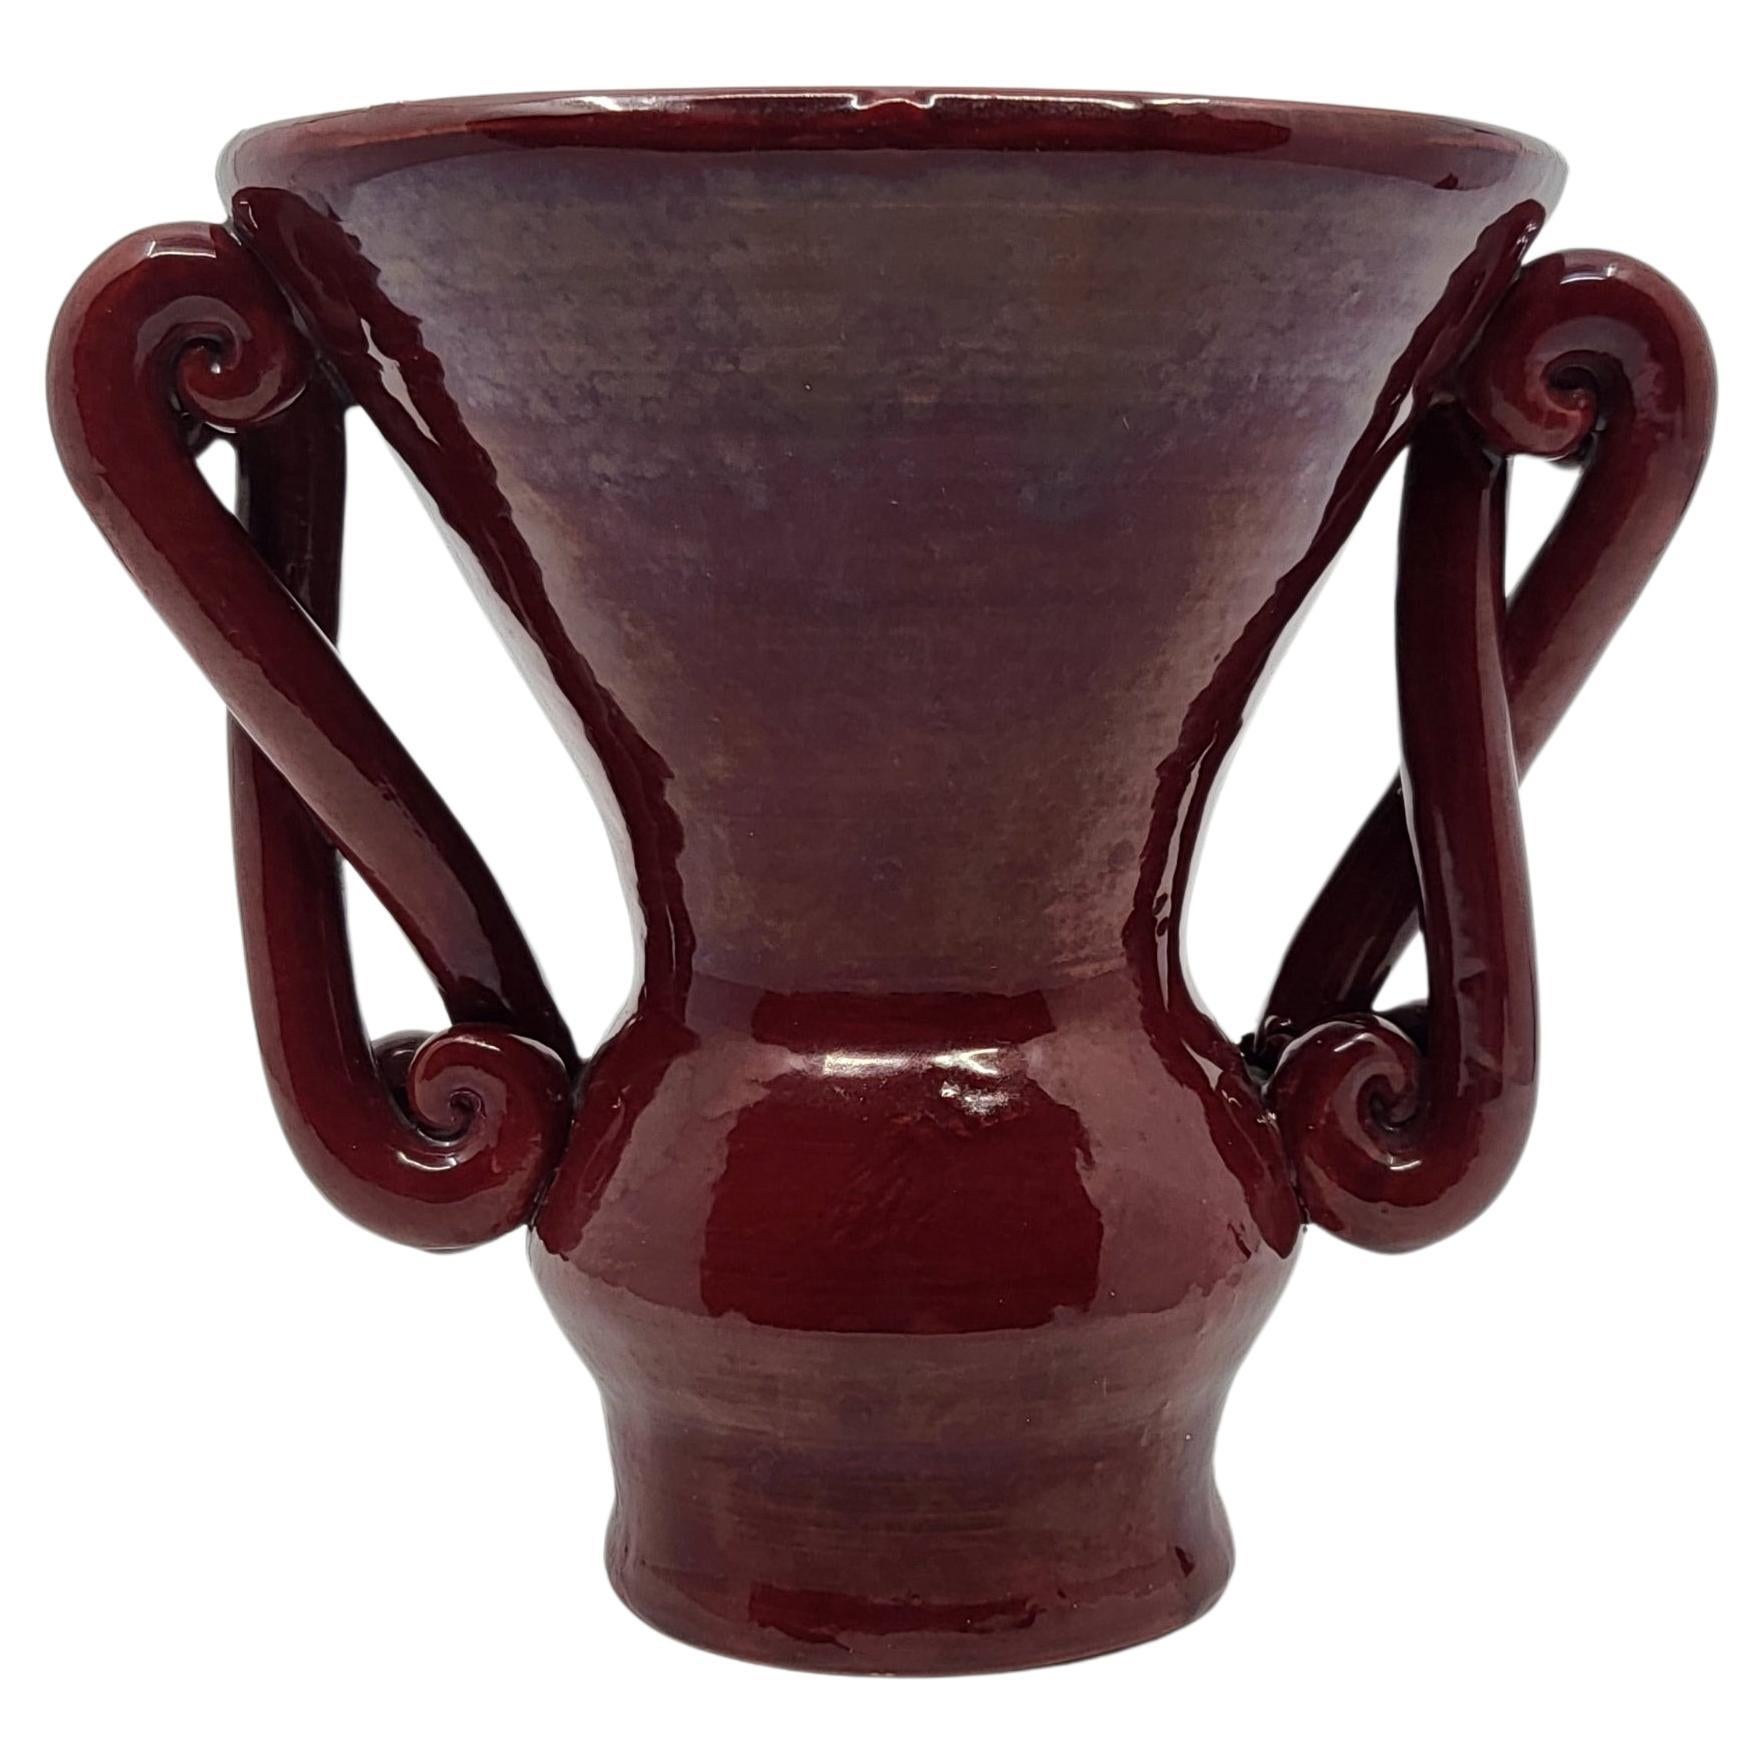 Vase à oreilles travaillées rare de part sa couleur ainsi que de son Design.

Austruy Jean (1910-2012)
Comme Suzanne Ramié (Madoura) ou encore Robert Picault, Jean Austruy fait partie de cette génération de céramiste de l’après-guerre qui a